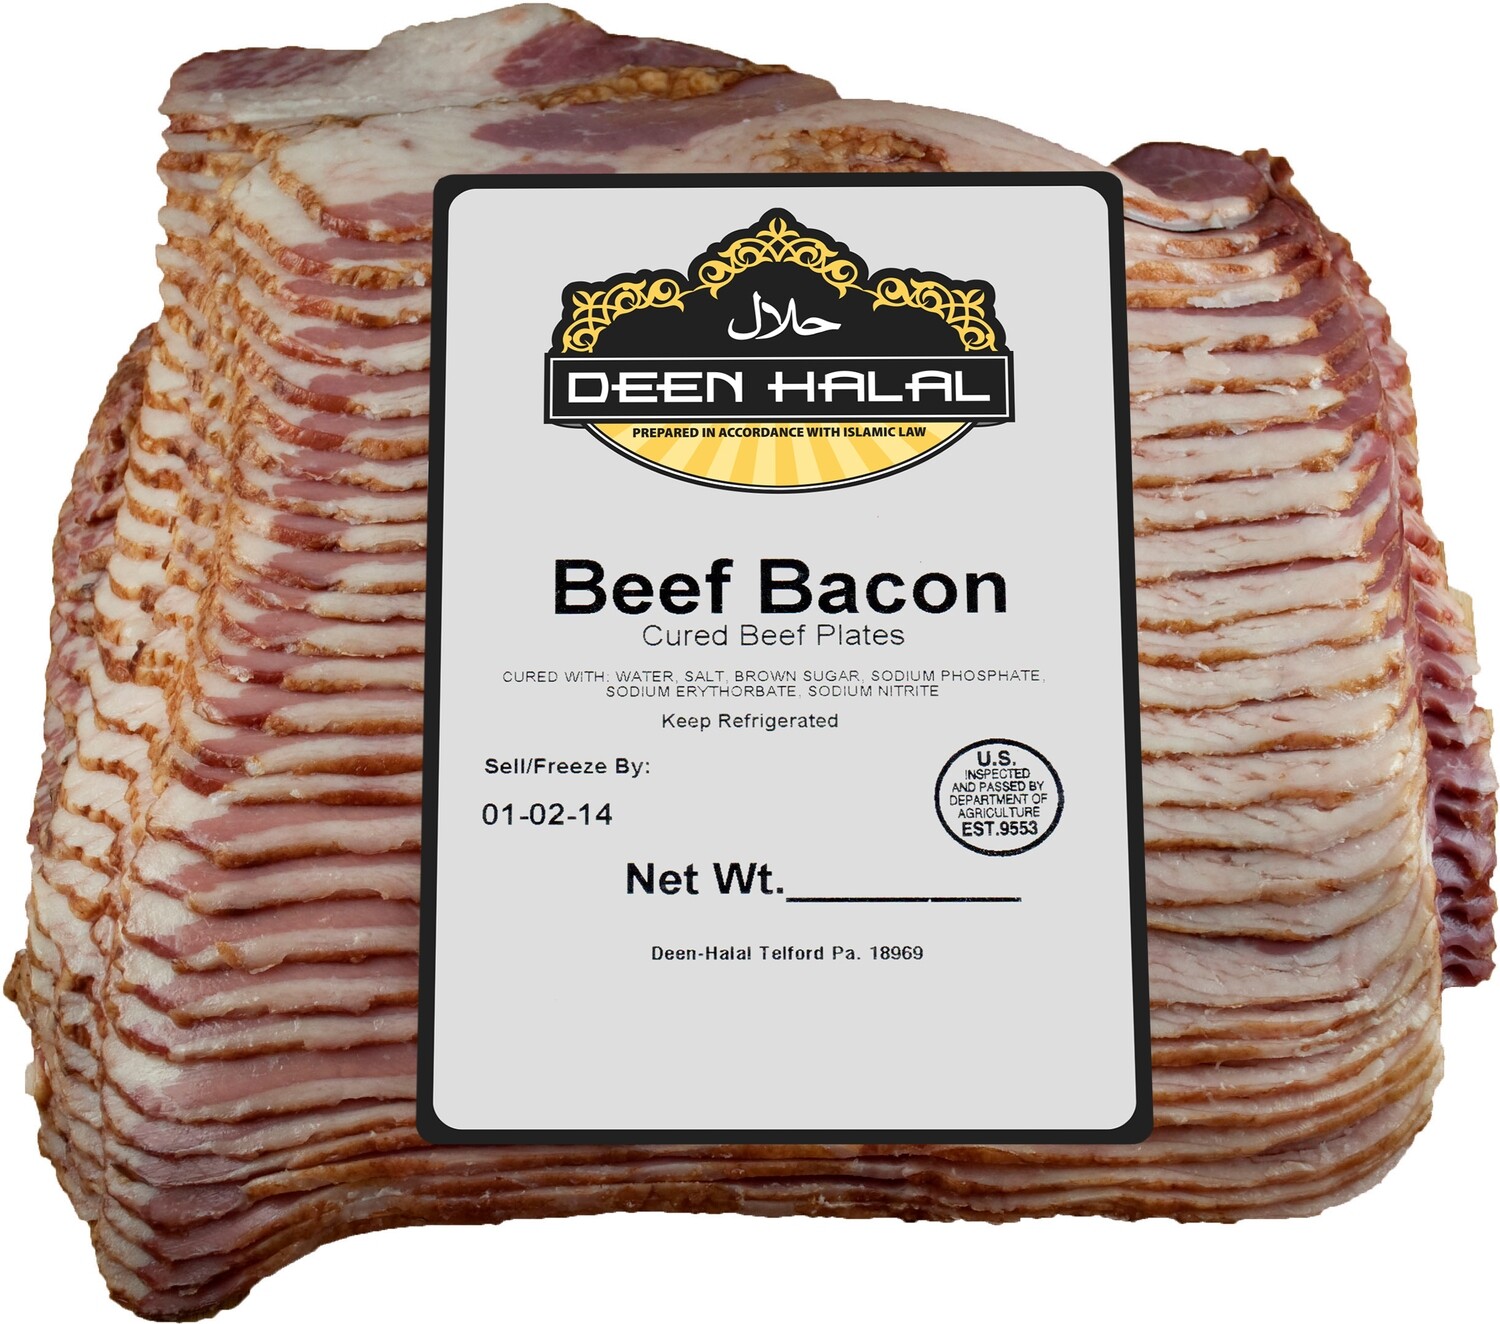 Beef bacon halal